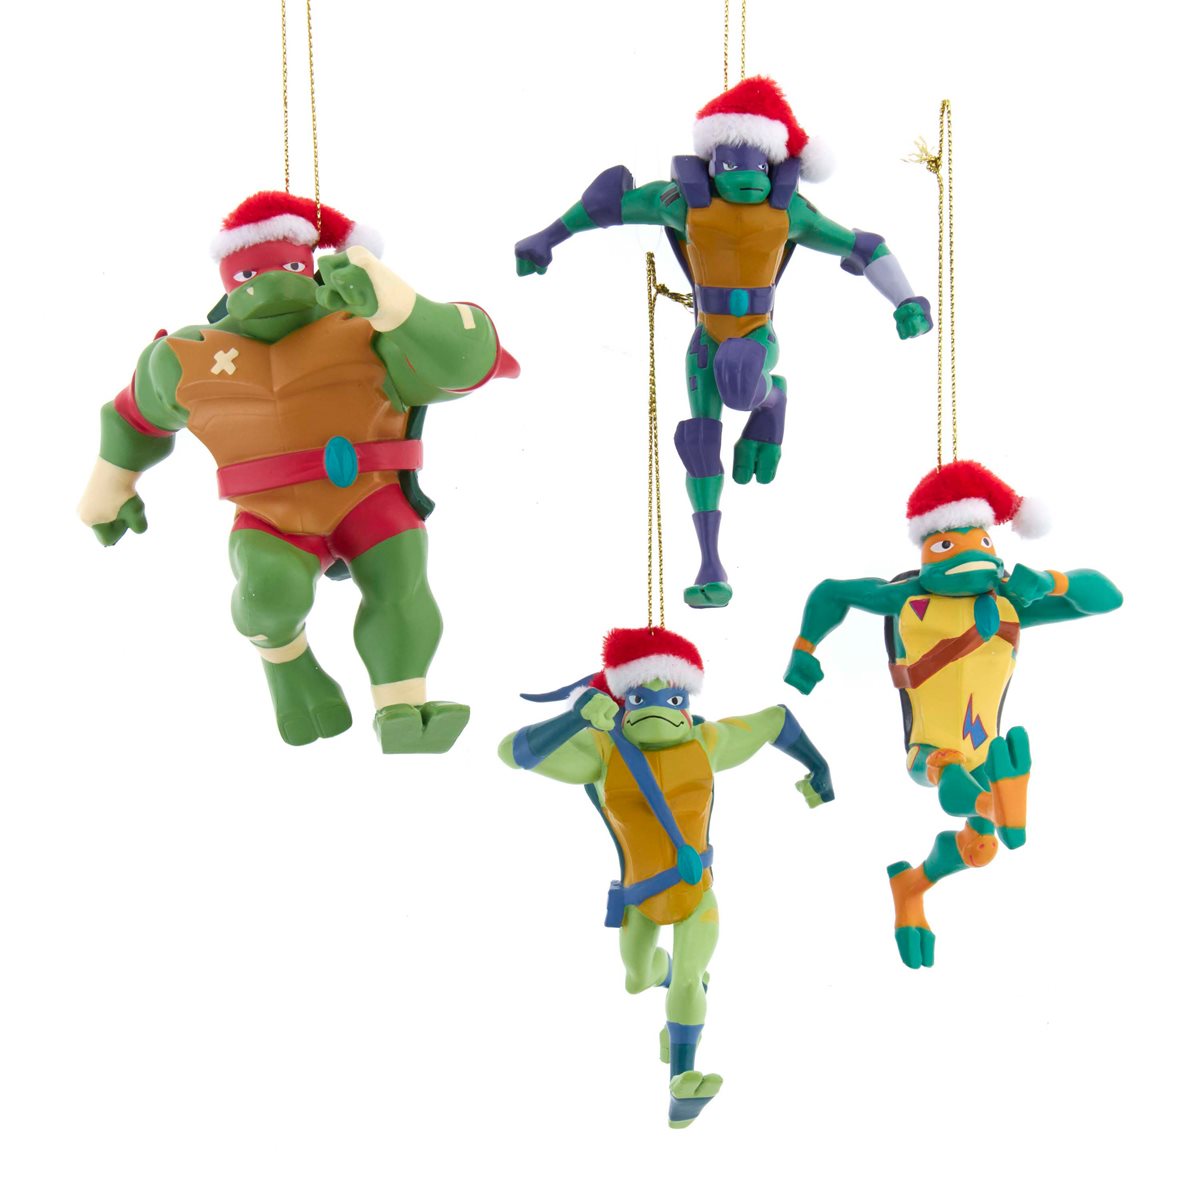 Teenage Mutant Ninja Turtles TMNT Leonardo Plush Christmas Stocking Damaged